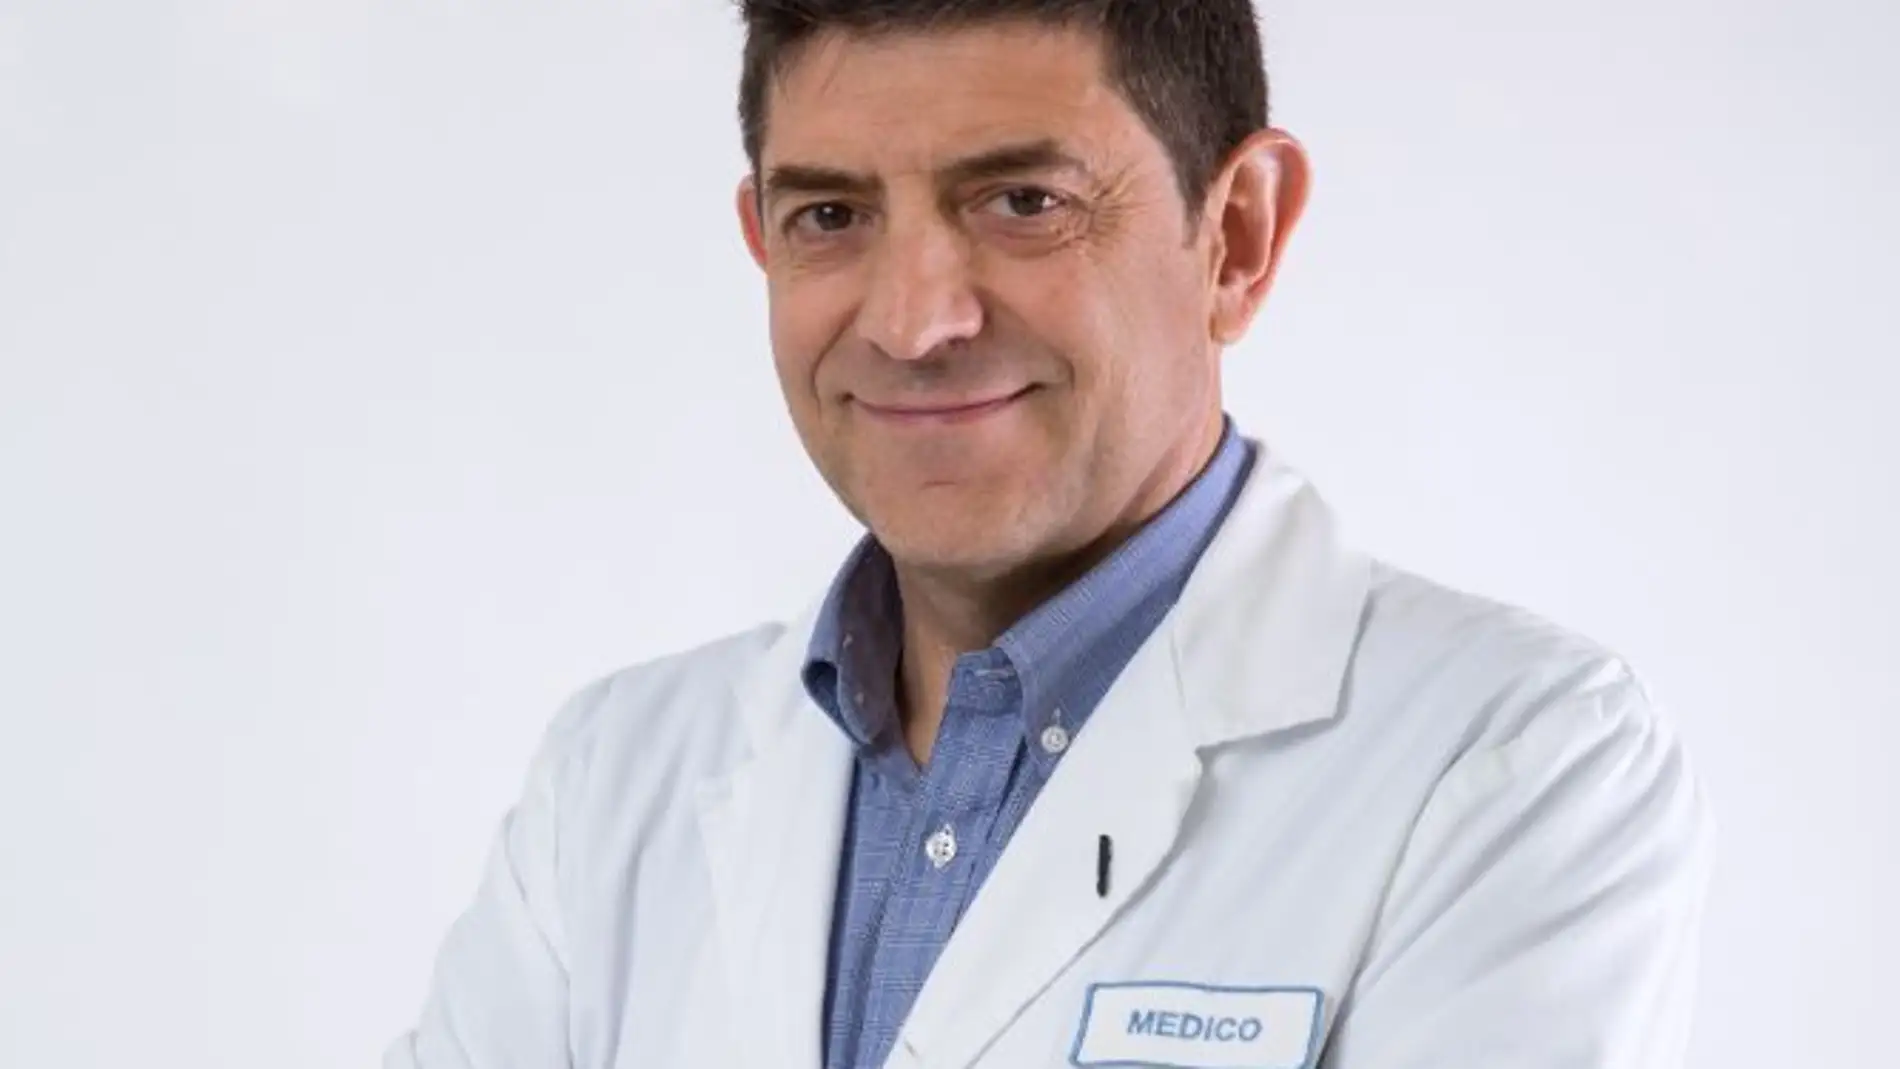 El Dr. José Isidro Belda, jefe de servicio, ha participado en el Comité Científico y como coordinador de la reunión de la Sociedad Española de Oftalmología 